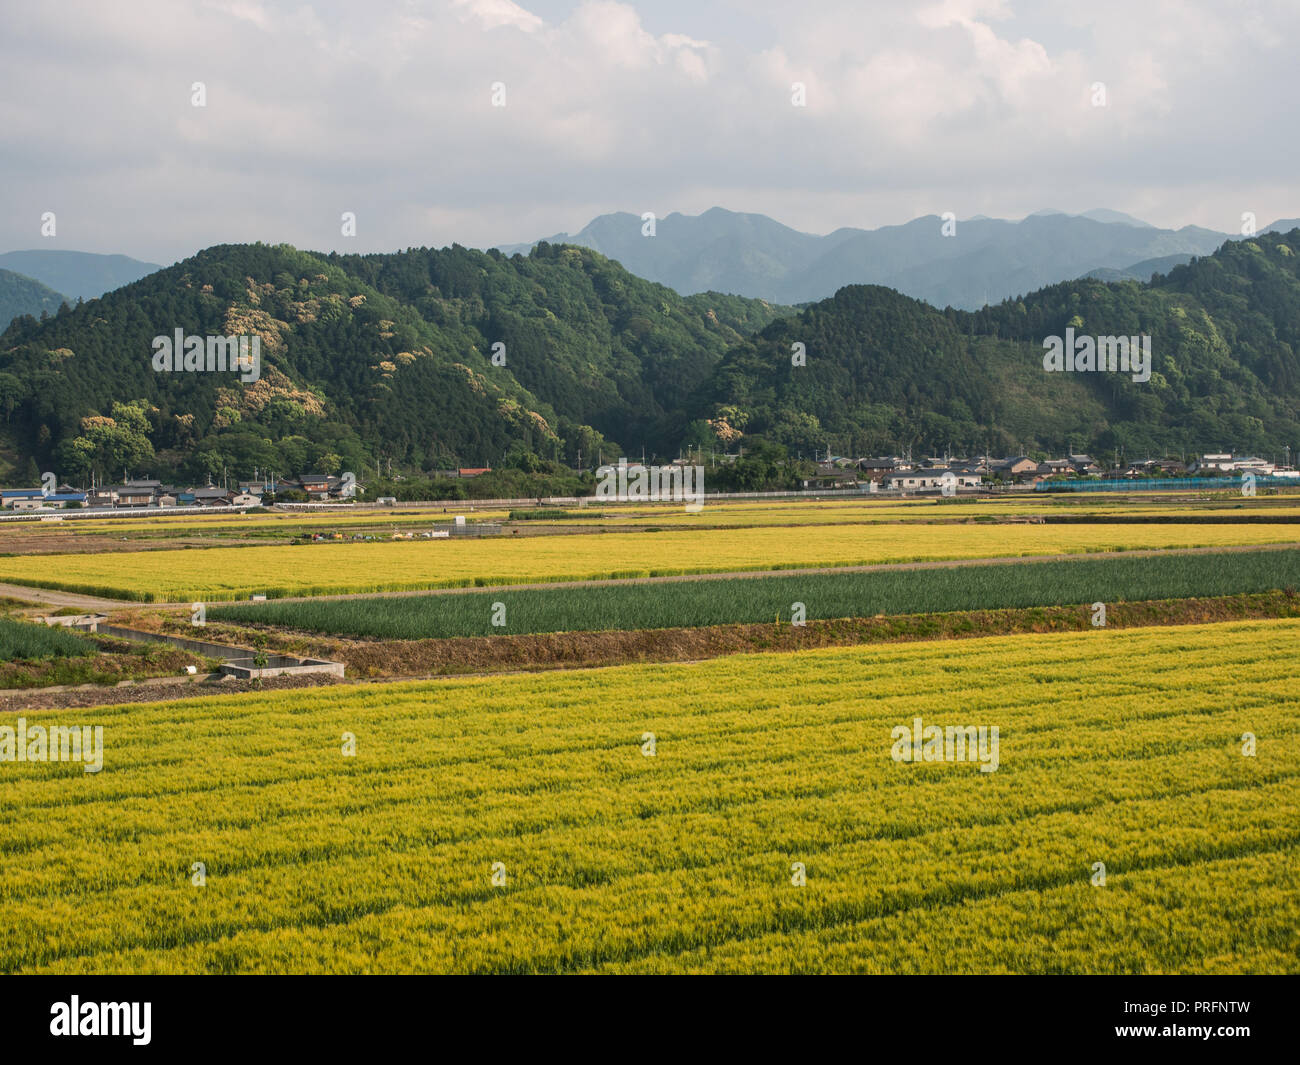 .Giapponese paesaggio rurale, campi con colture di orzo mature e cipolle, Forest Hills e il borgo agricolo, Ehime Shikoku Giappone Foto Stock